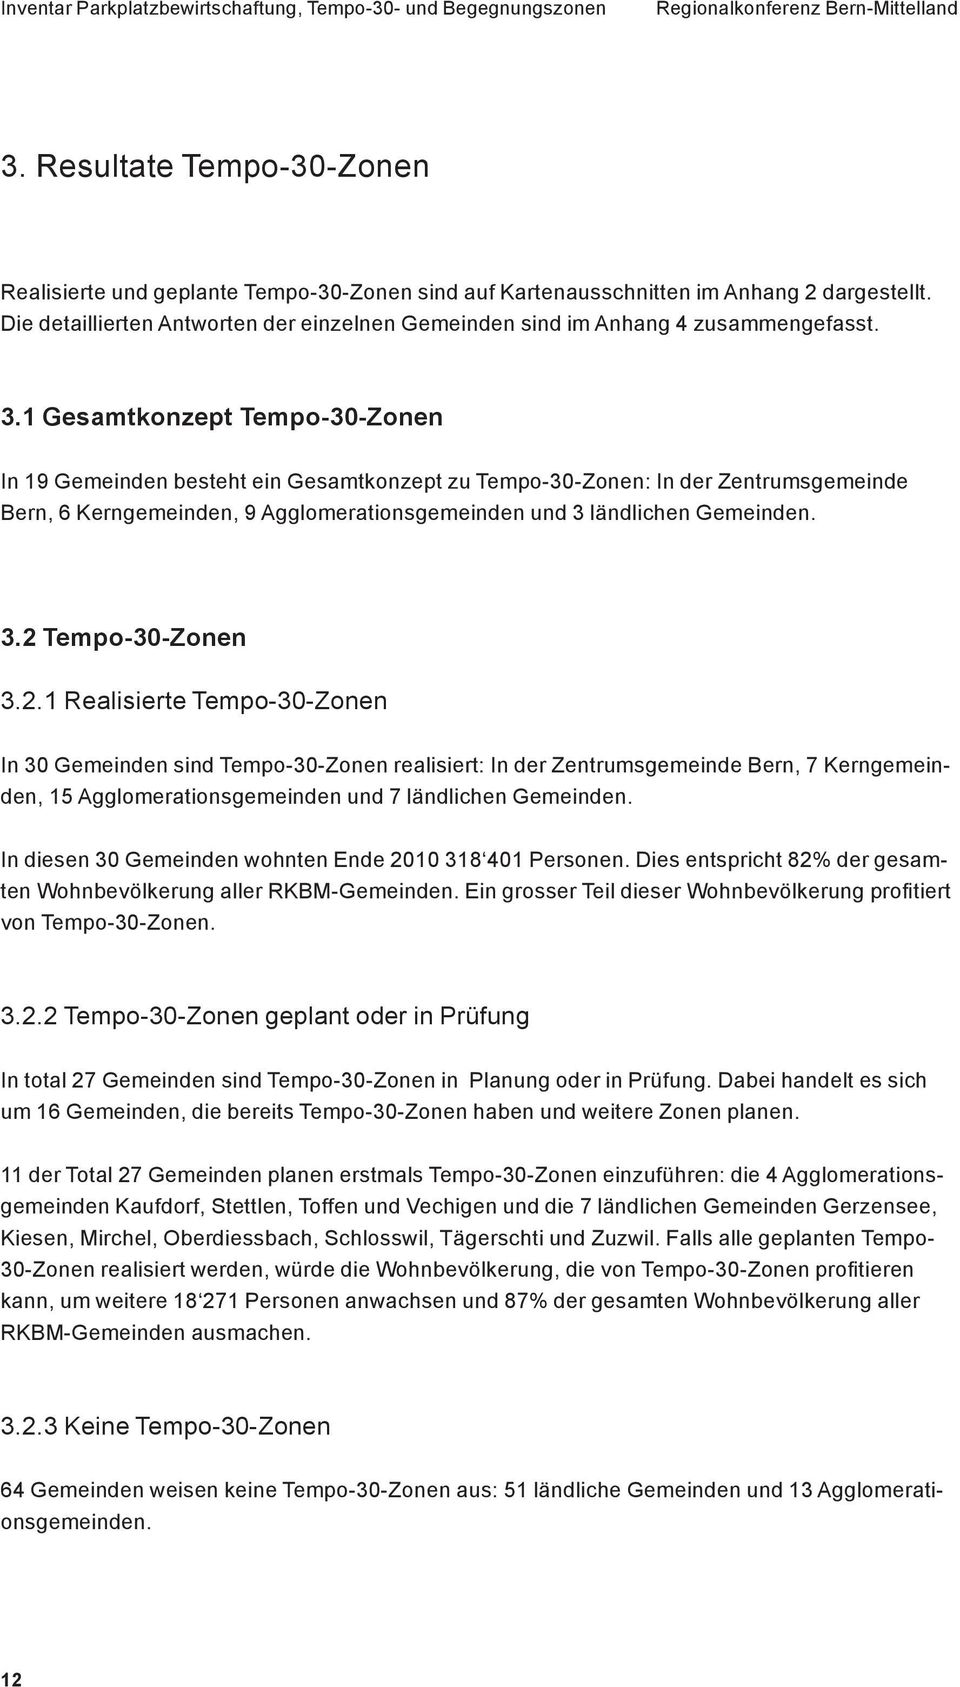 1 Gesamtkonzept Tempo-30-Zonen In 19 Gemeinden besteht ein Gesamtkonzept zu Tempo-30-Zonen: In der Zentrumsgemeinde Bern, 6 Kerngemeinden, 9 Agglomerationsgemeinden und 3 ländlichen Gemeinden. 3.2 Tempo-30-Zonen 3.